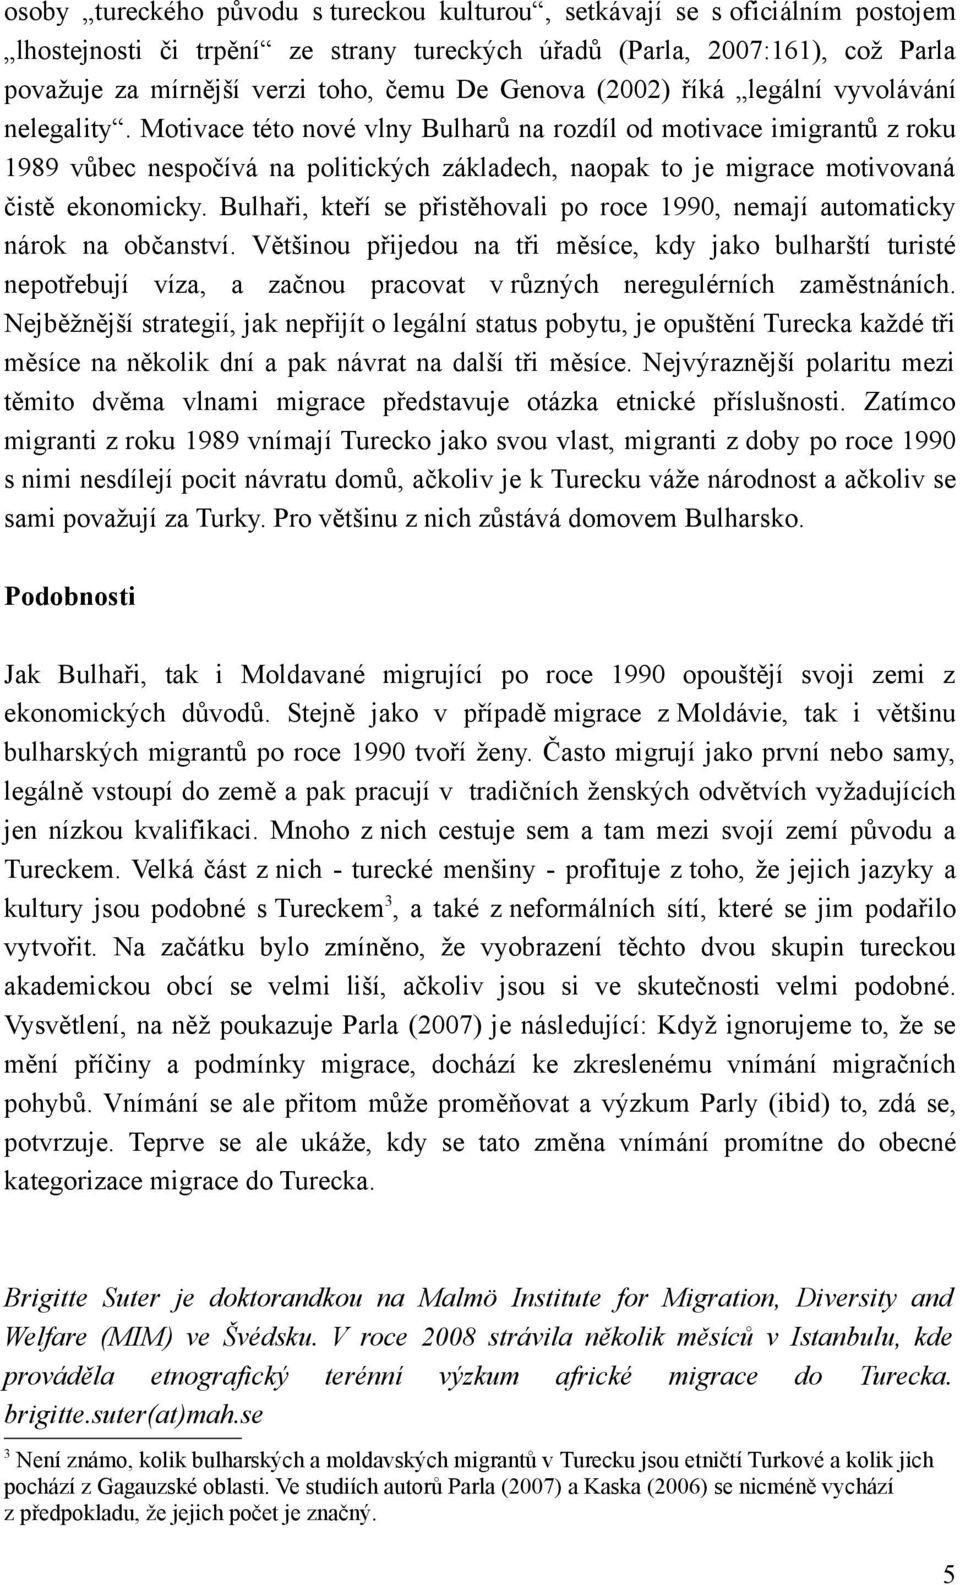 Motivace této nové vlny Bulharů na rozdíl od motivace imigrantů z roku 1989 vůbec nespočívá na politických základech, naopak to je migrace motivovaná čistě ekonomicky.